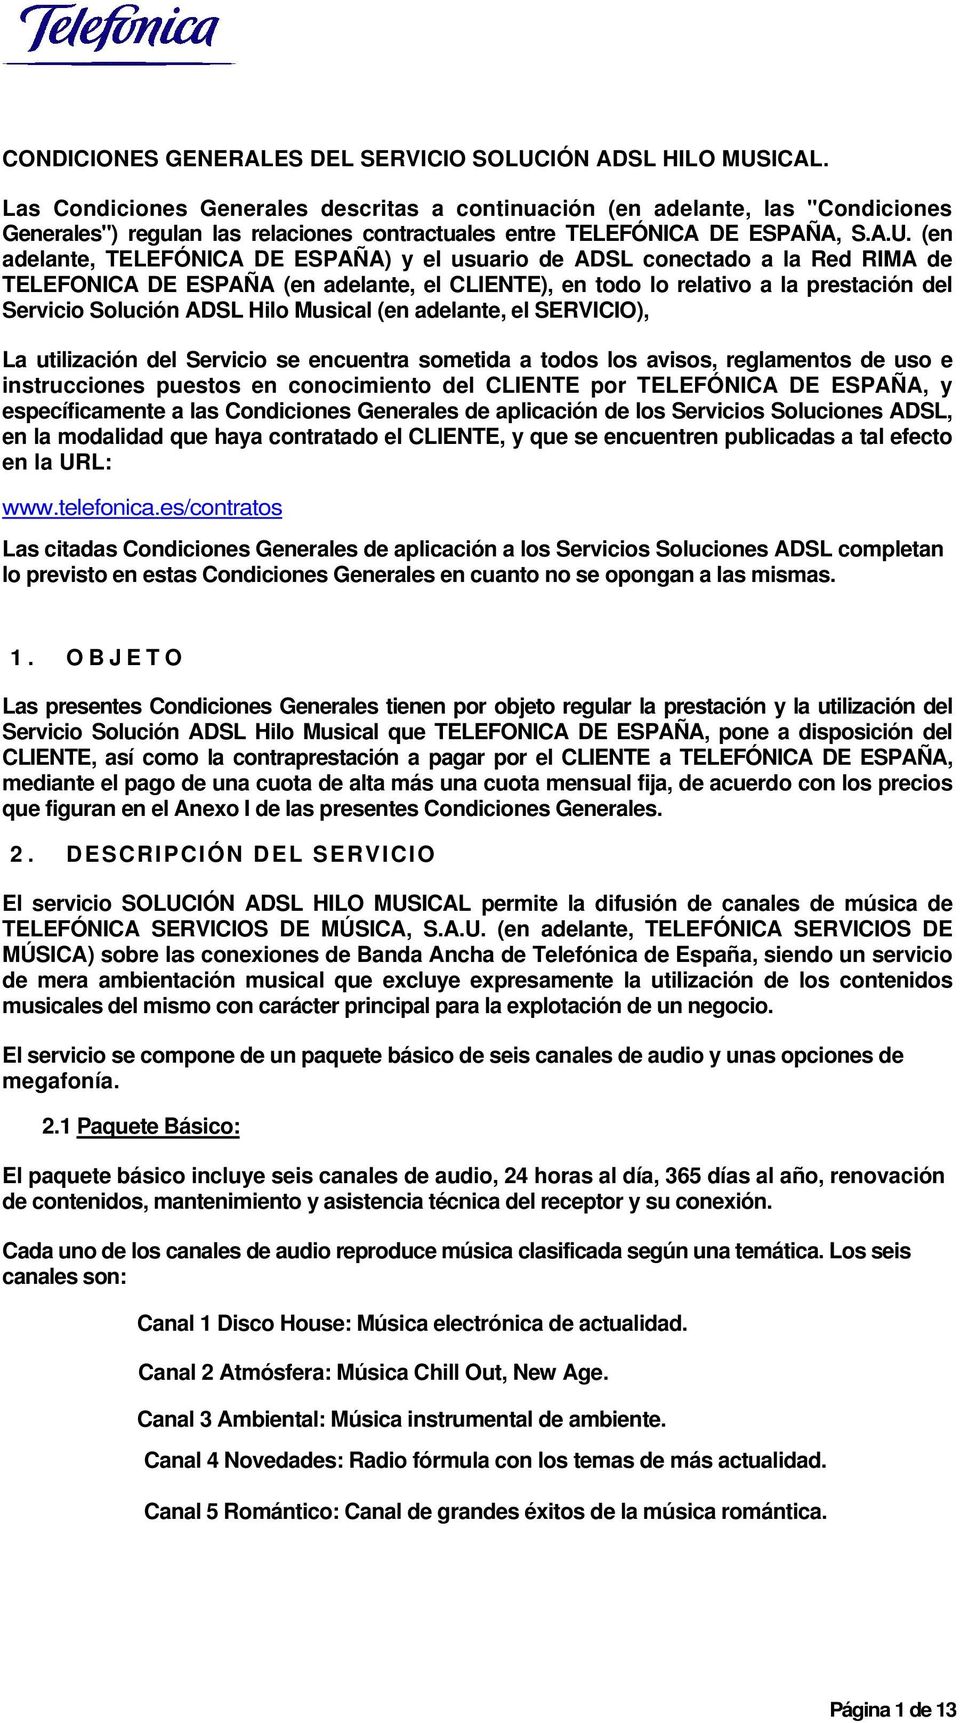 (en adelante, TELEFÓNICA DE ESPAÑA) y el usuario de ADSL conectado a la Red RIMA de TELEFONICA DE ESPAÑA (en adelante, el CLIENTE), en todo lo relativo a la prestación del Servicio Solución ADSL Hilo